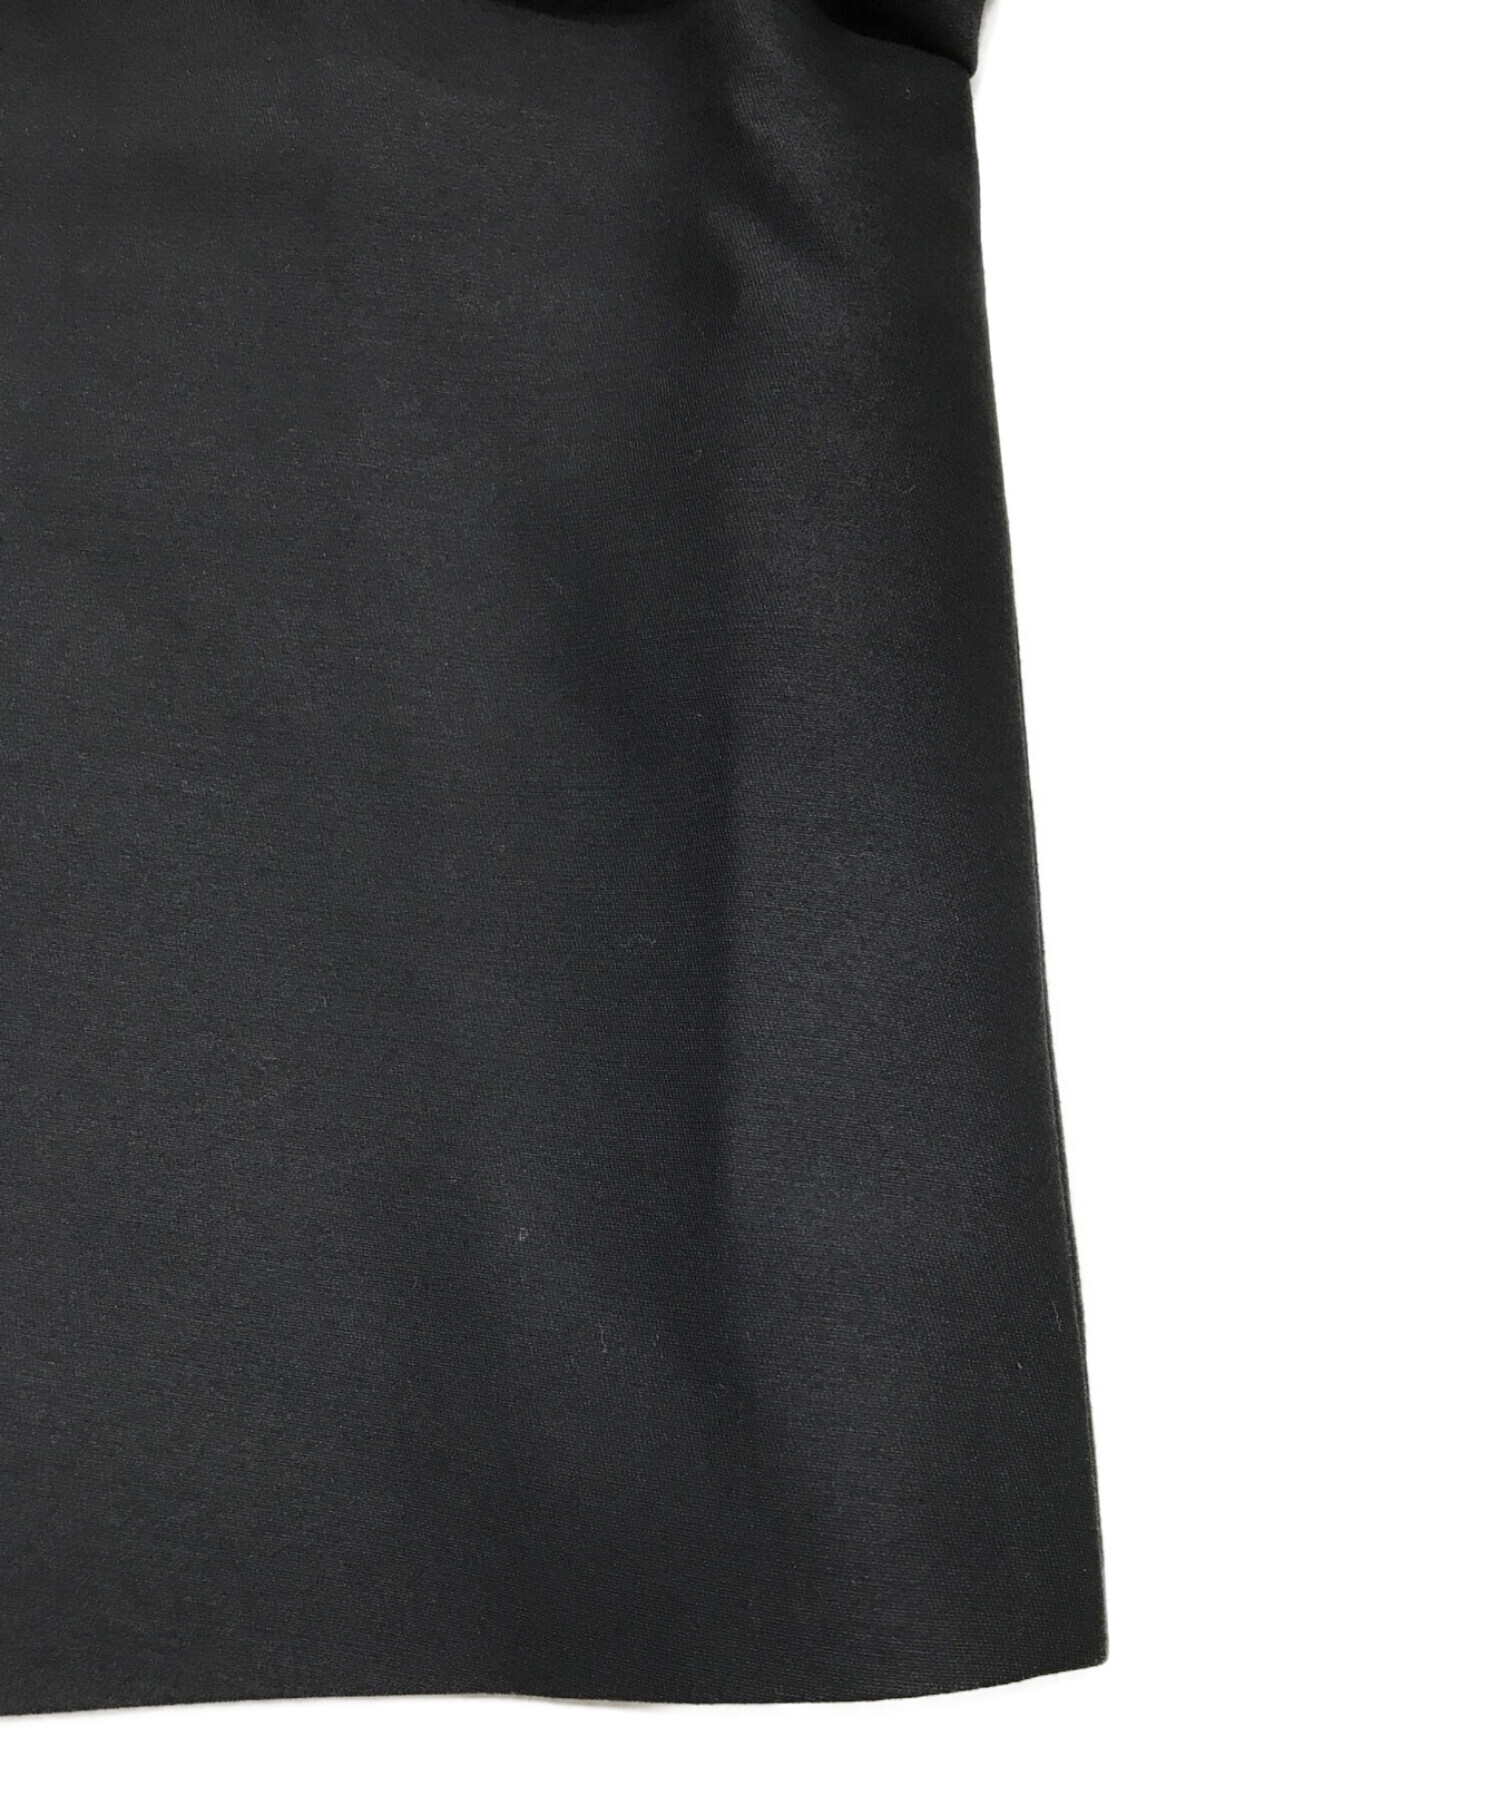 cccmalie (シーマリー) シルクウールノーカラージャケット ブラック サイズ:38